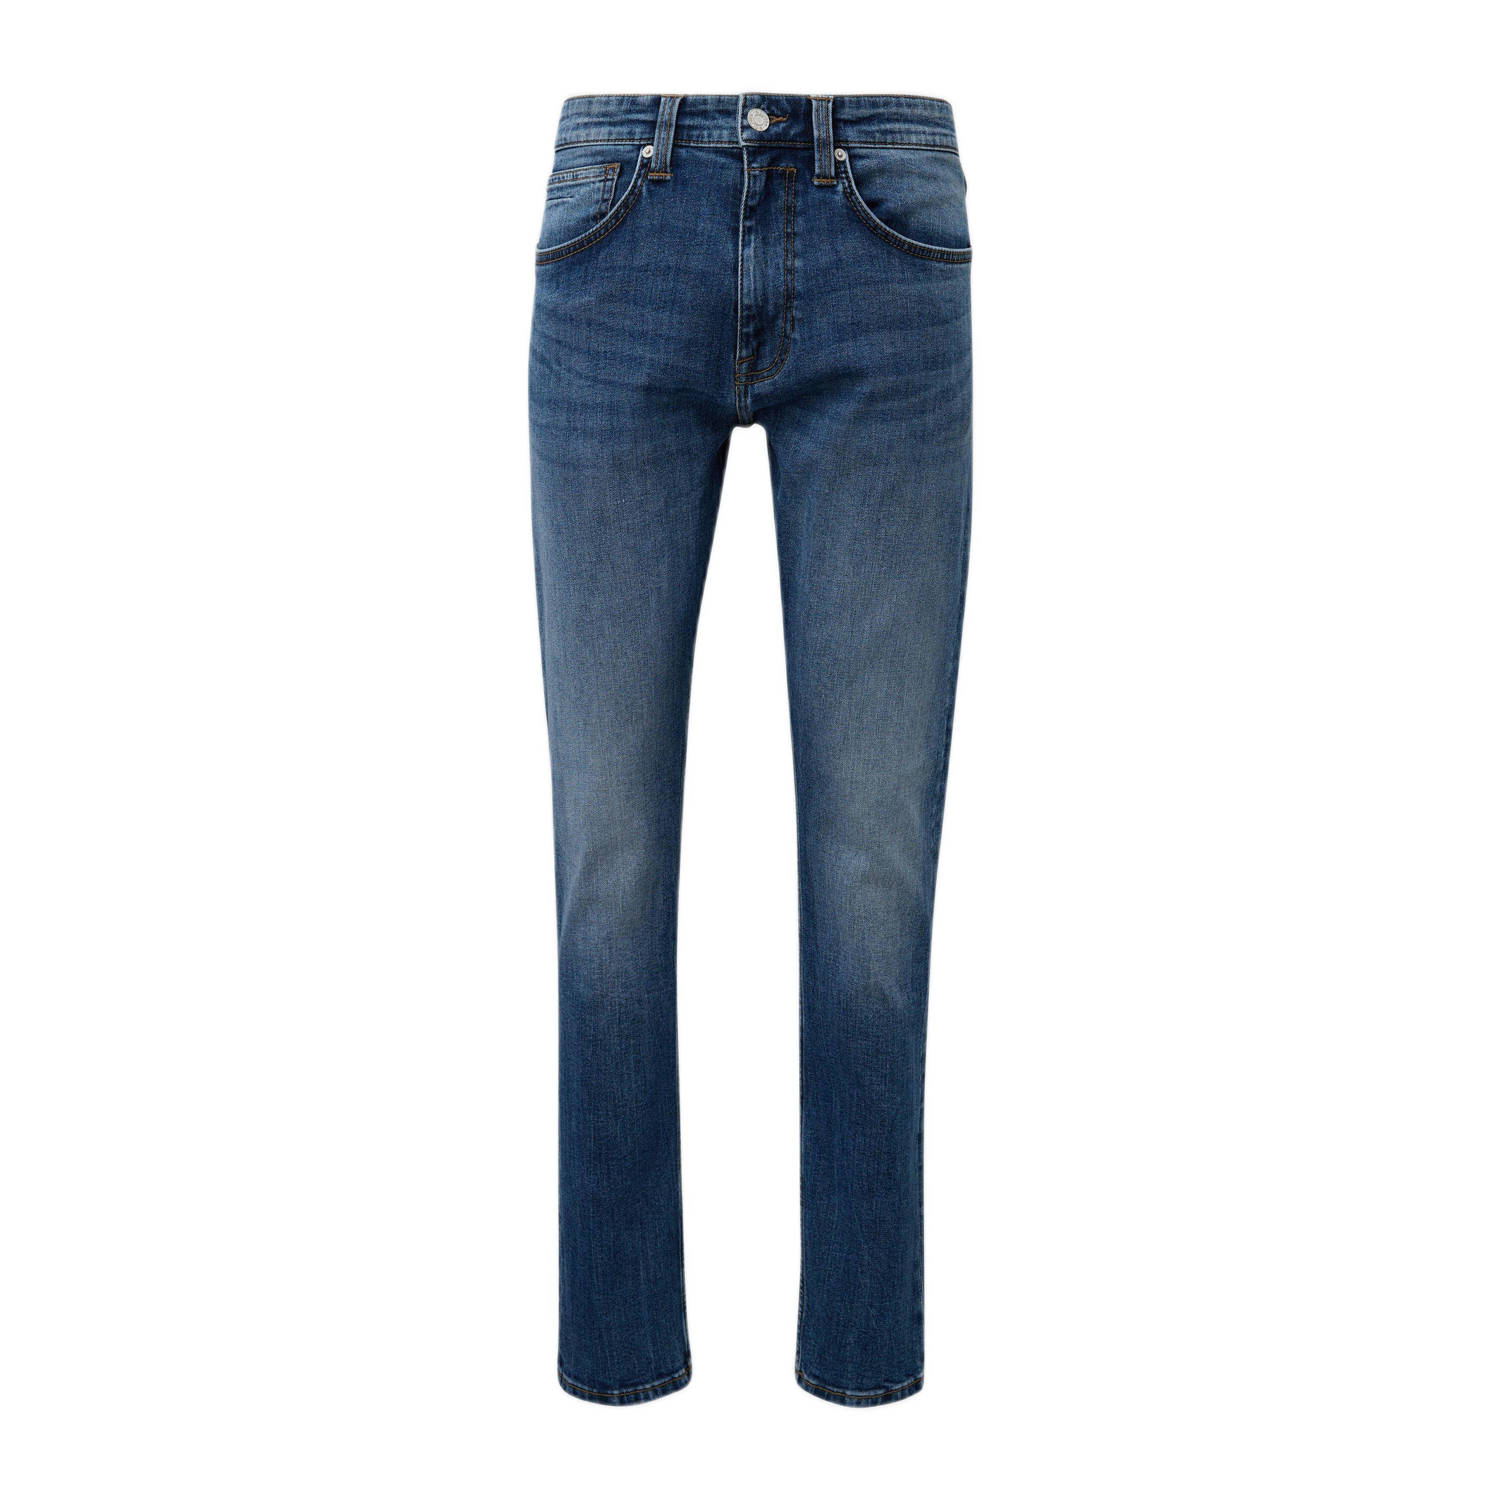 S.Oliver regular fit jeans dark blue denim